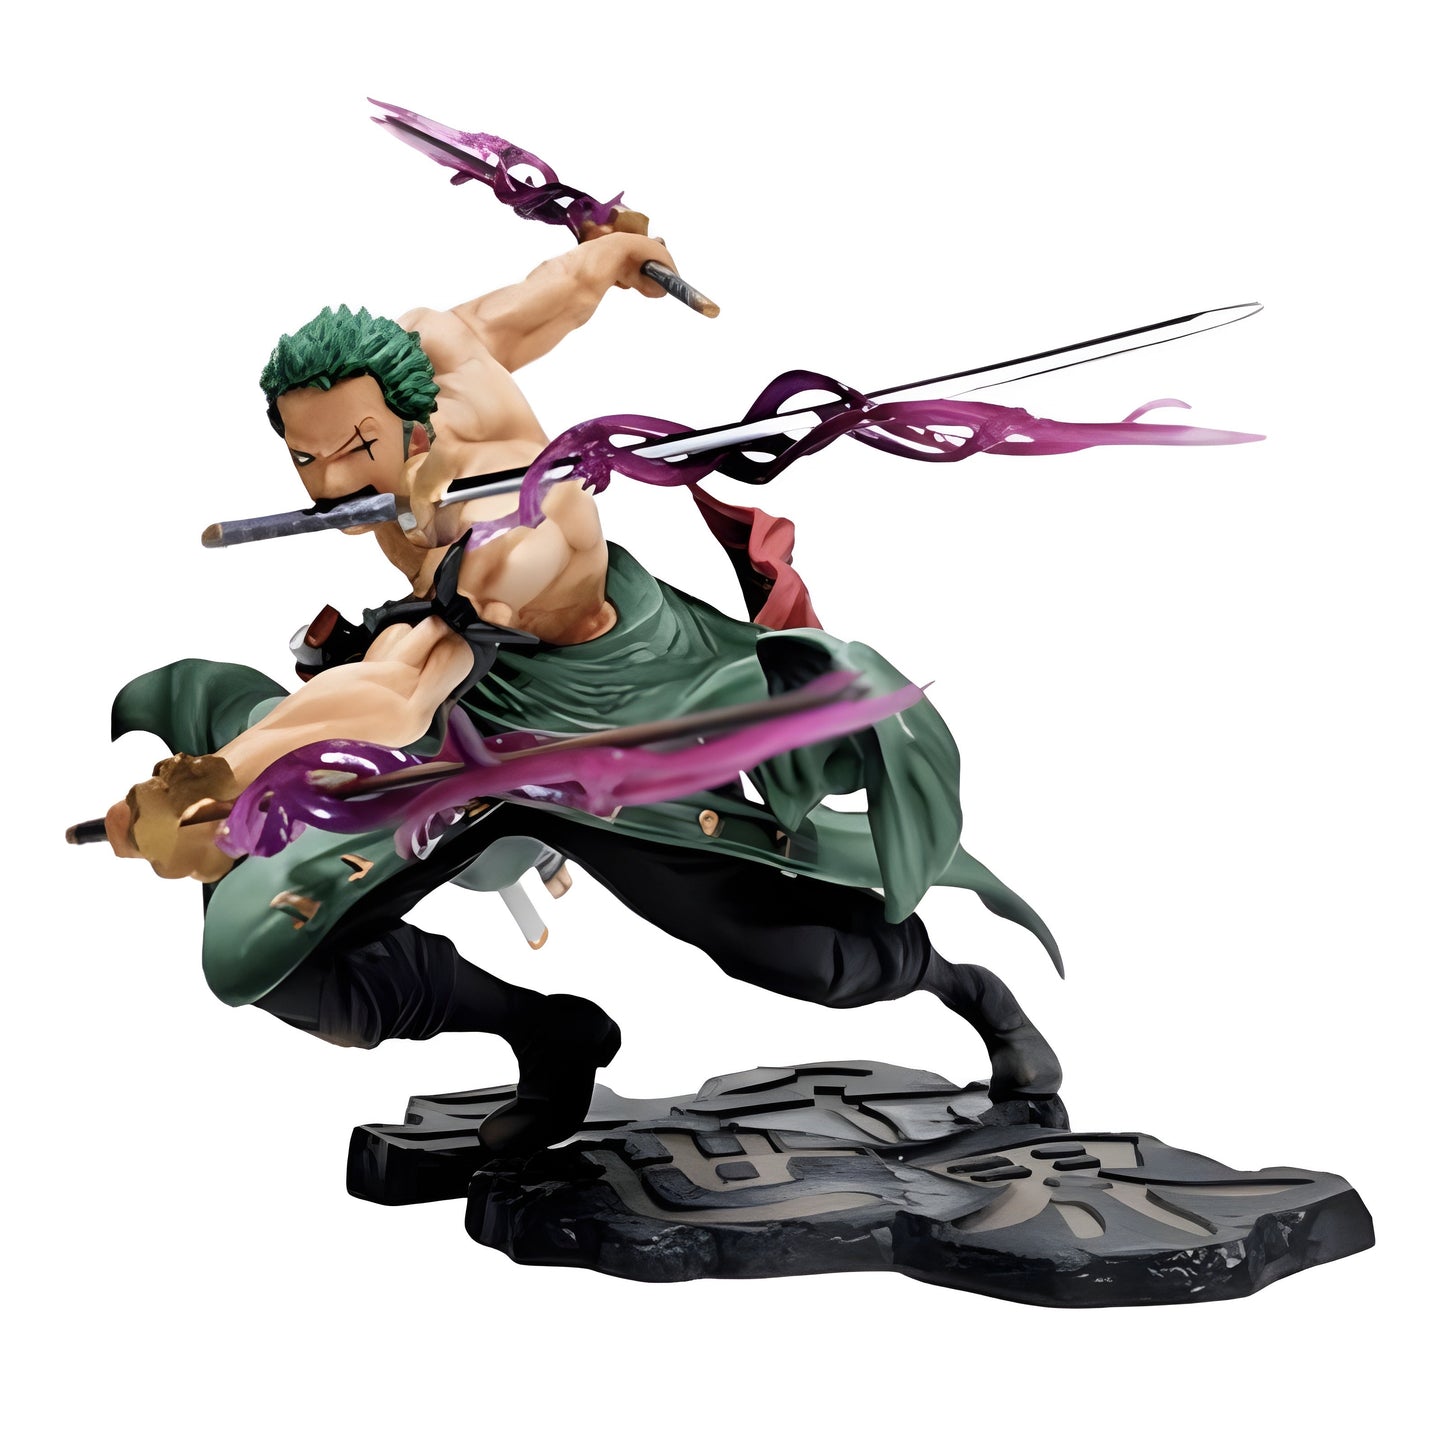 Roronoa Zoro, le puissant épéiste de One Piece, prend vie dans cette figurine haut de gamme, fidèle au manga.